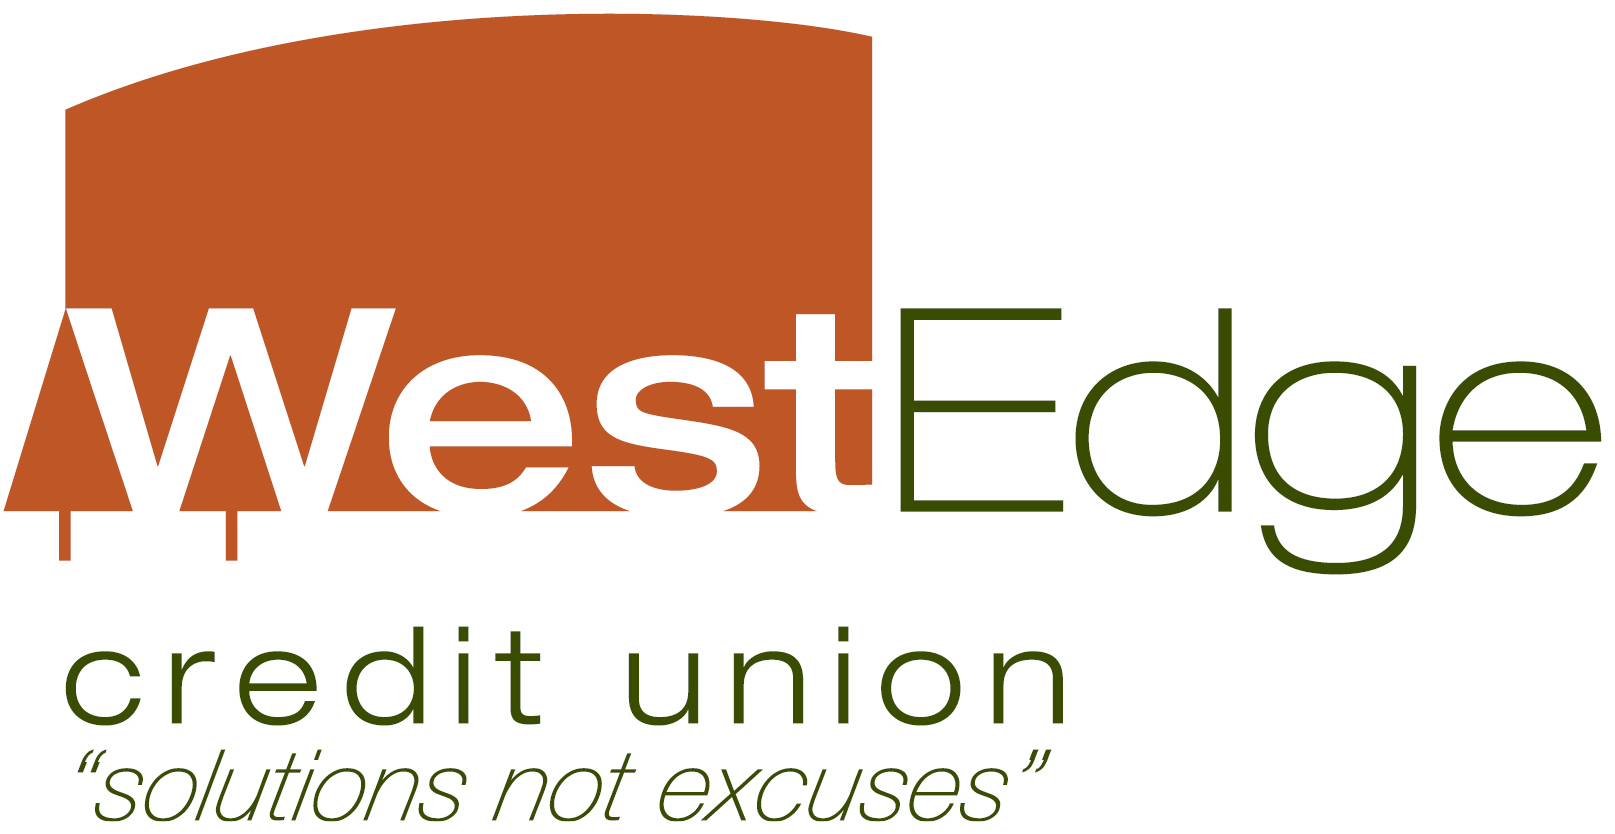 WestEdge Credit Union logo